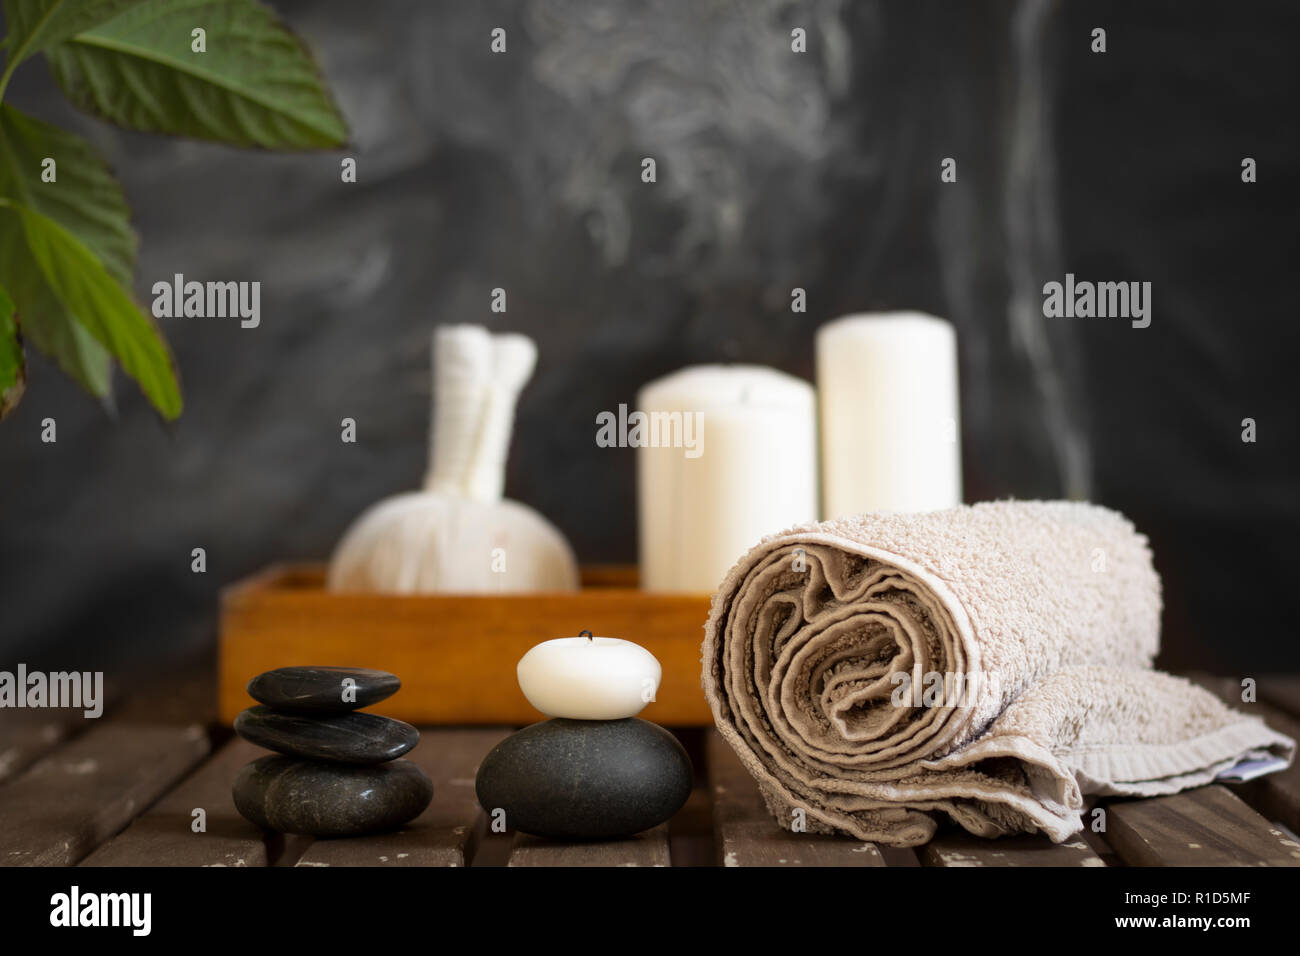 spa wellness objects arrangement Stock Photo - Alamy